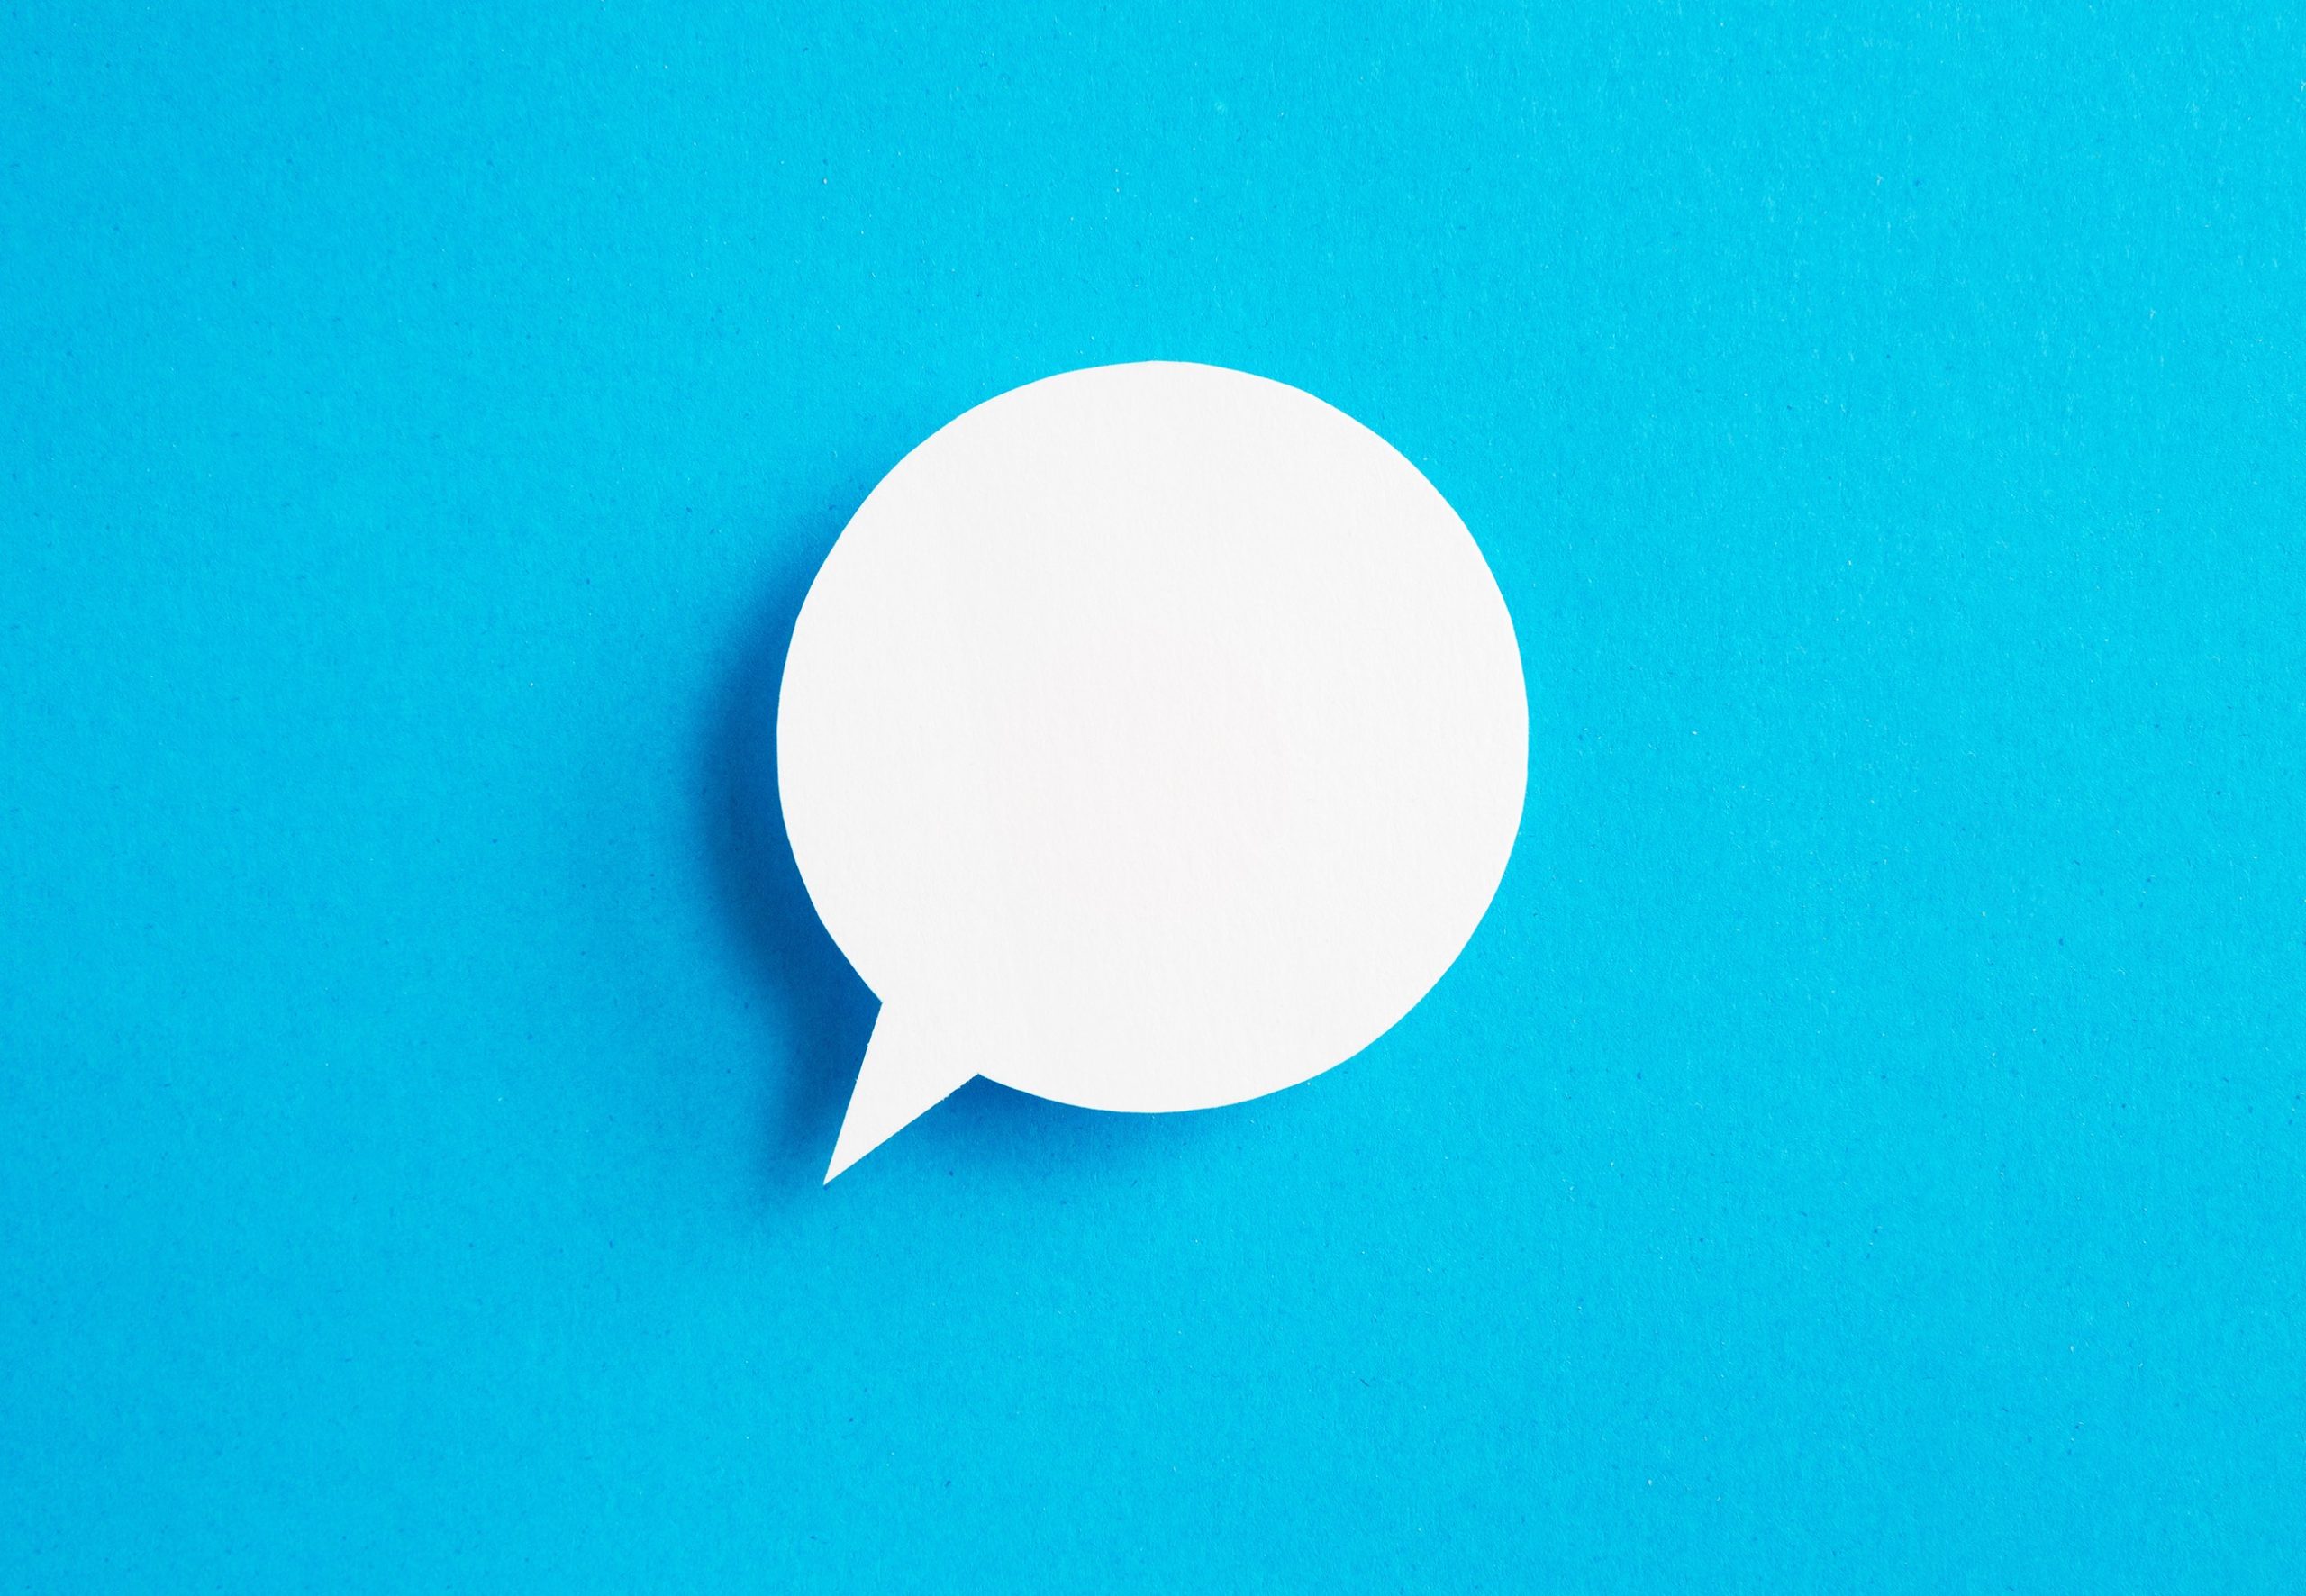 Boldist - Conversational Marketing: Do Chatbots Convert Better Than Web Forms?